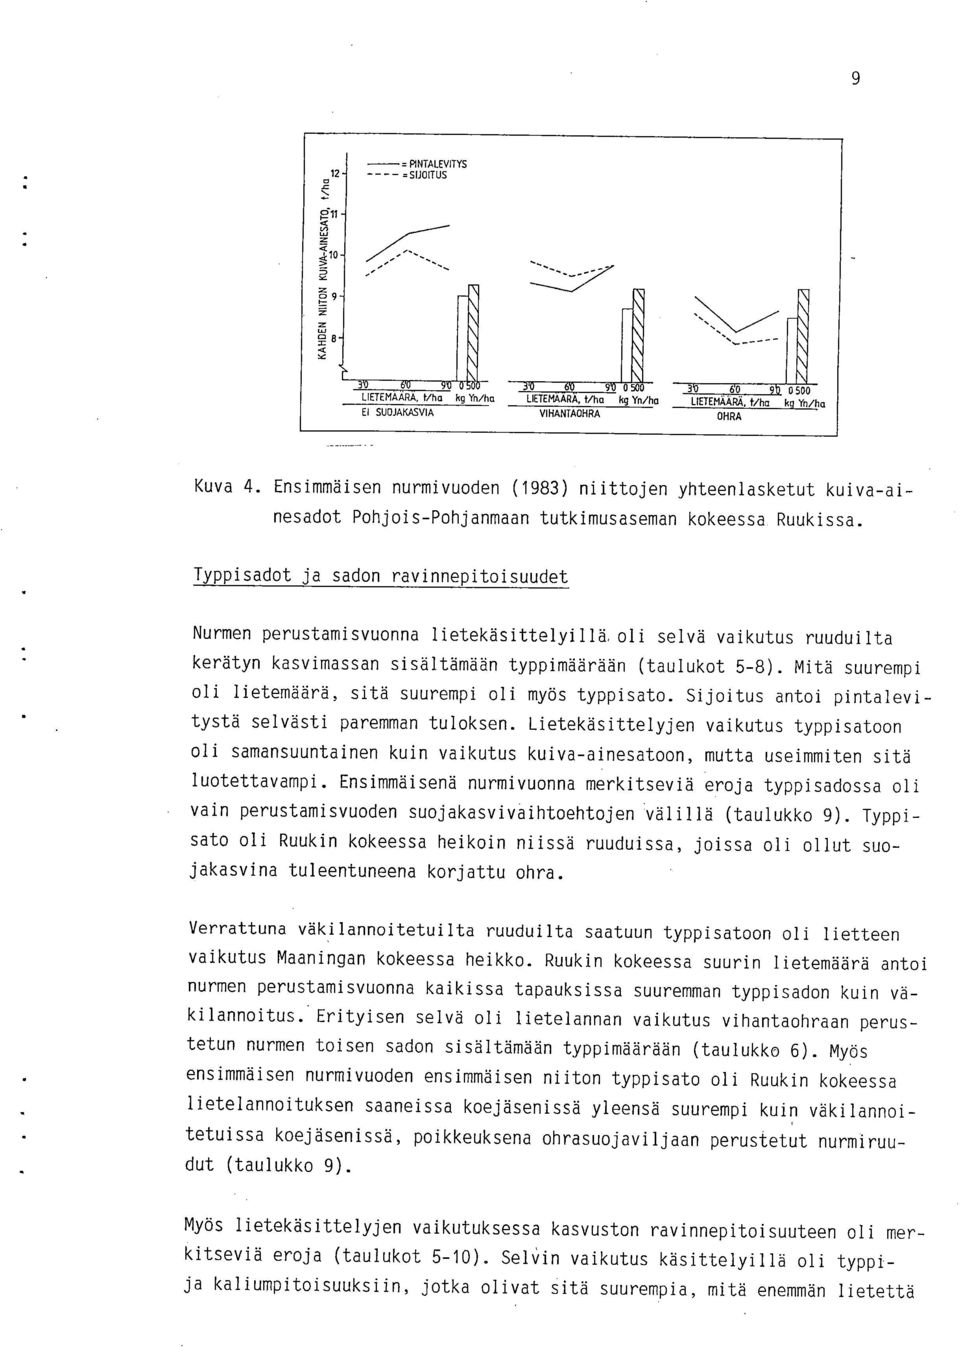 Typpisadot ja sadon ravinnepitoisuudet Nurmen perustamisvuonna lietekäsittelyillä, oli selvä vaikutus ruuduilta kerätyn kasvimassan sisältämään typpimäärään (taulukot 5-8).